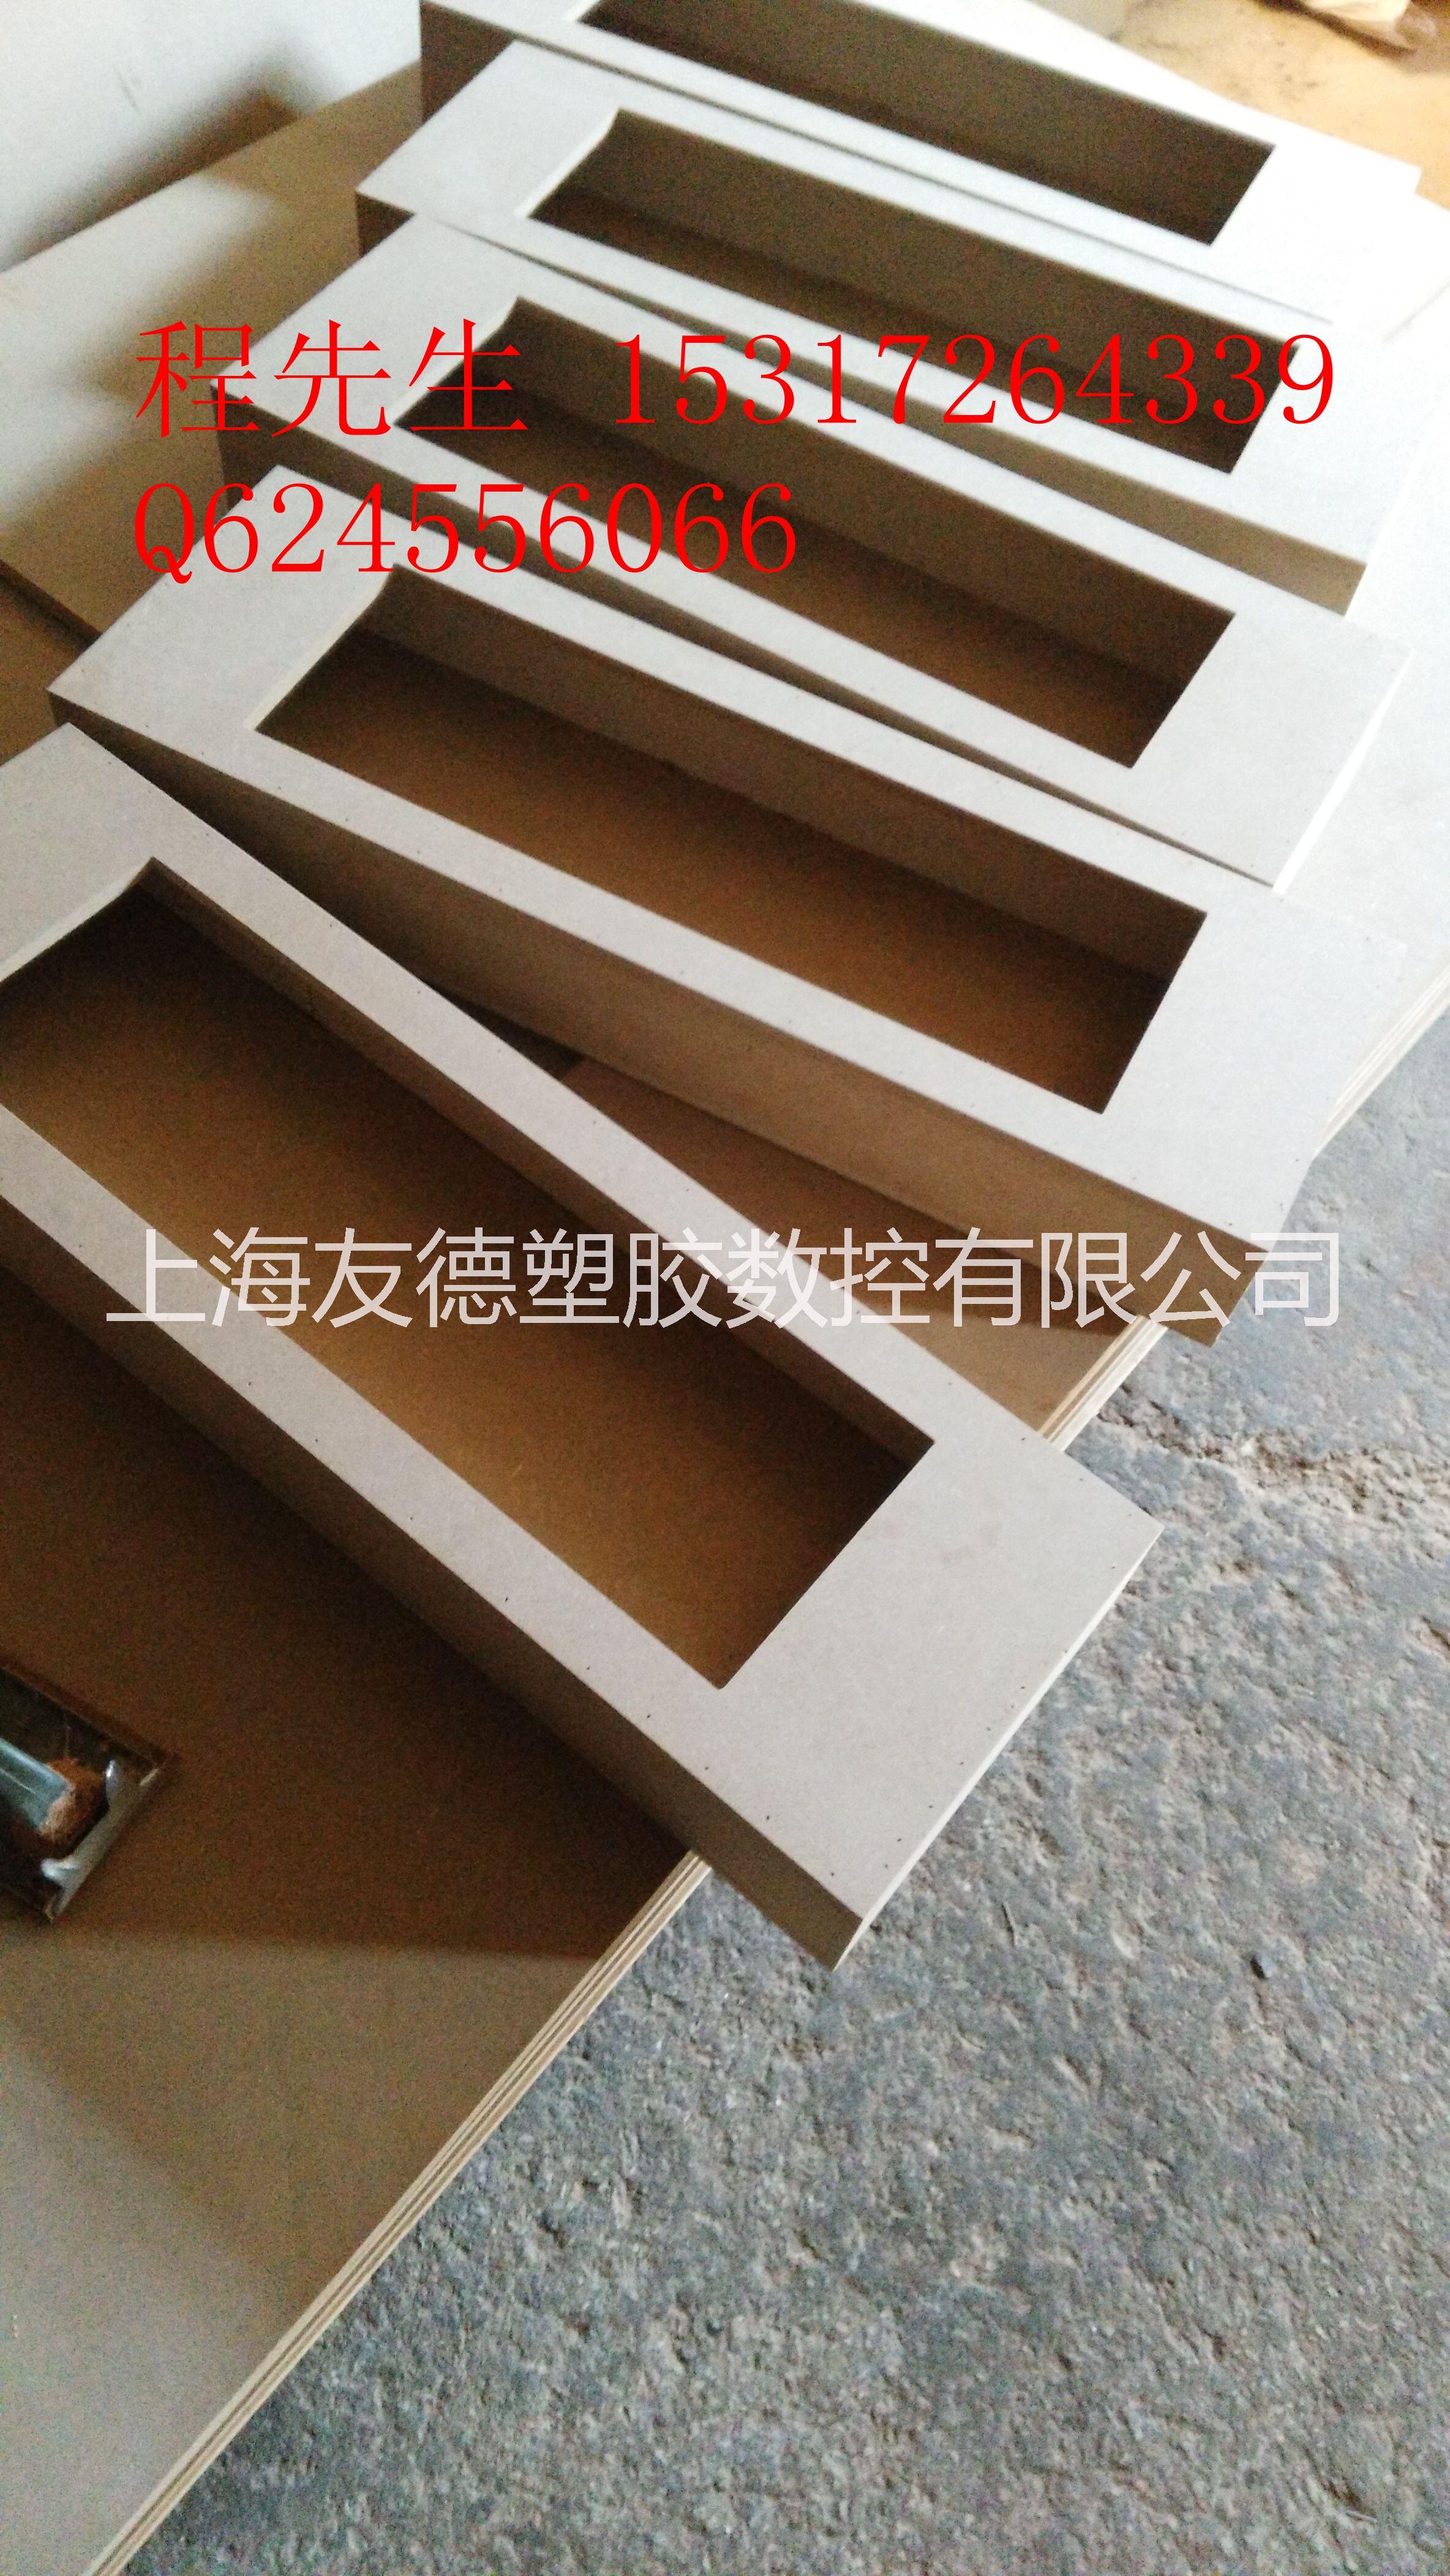 上海木板雕刻加工@上海多层板雕刻加工@上海密度板雕刻加工